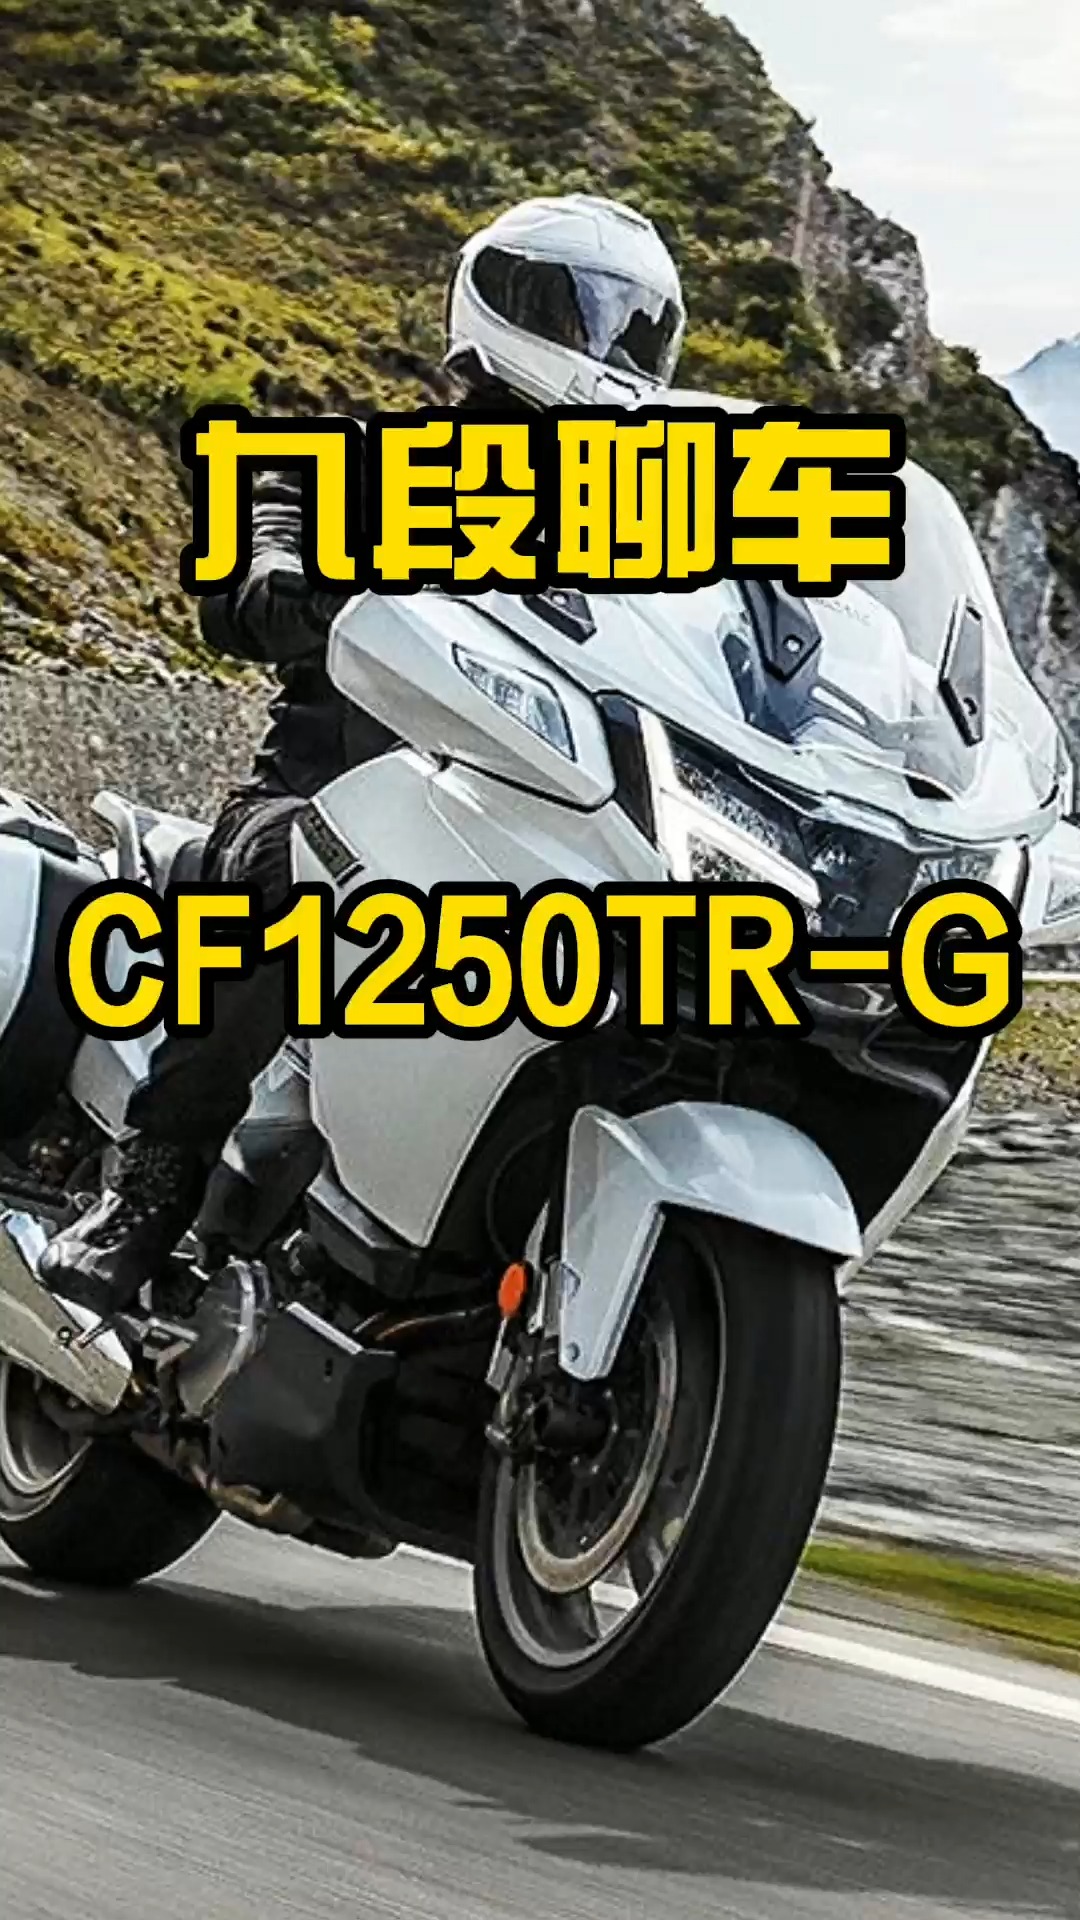 国产摩托的天花板春风cf1250trg